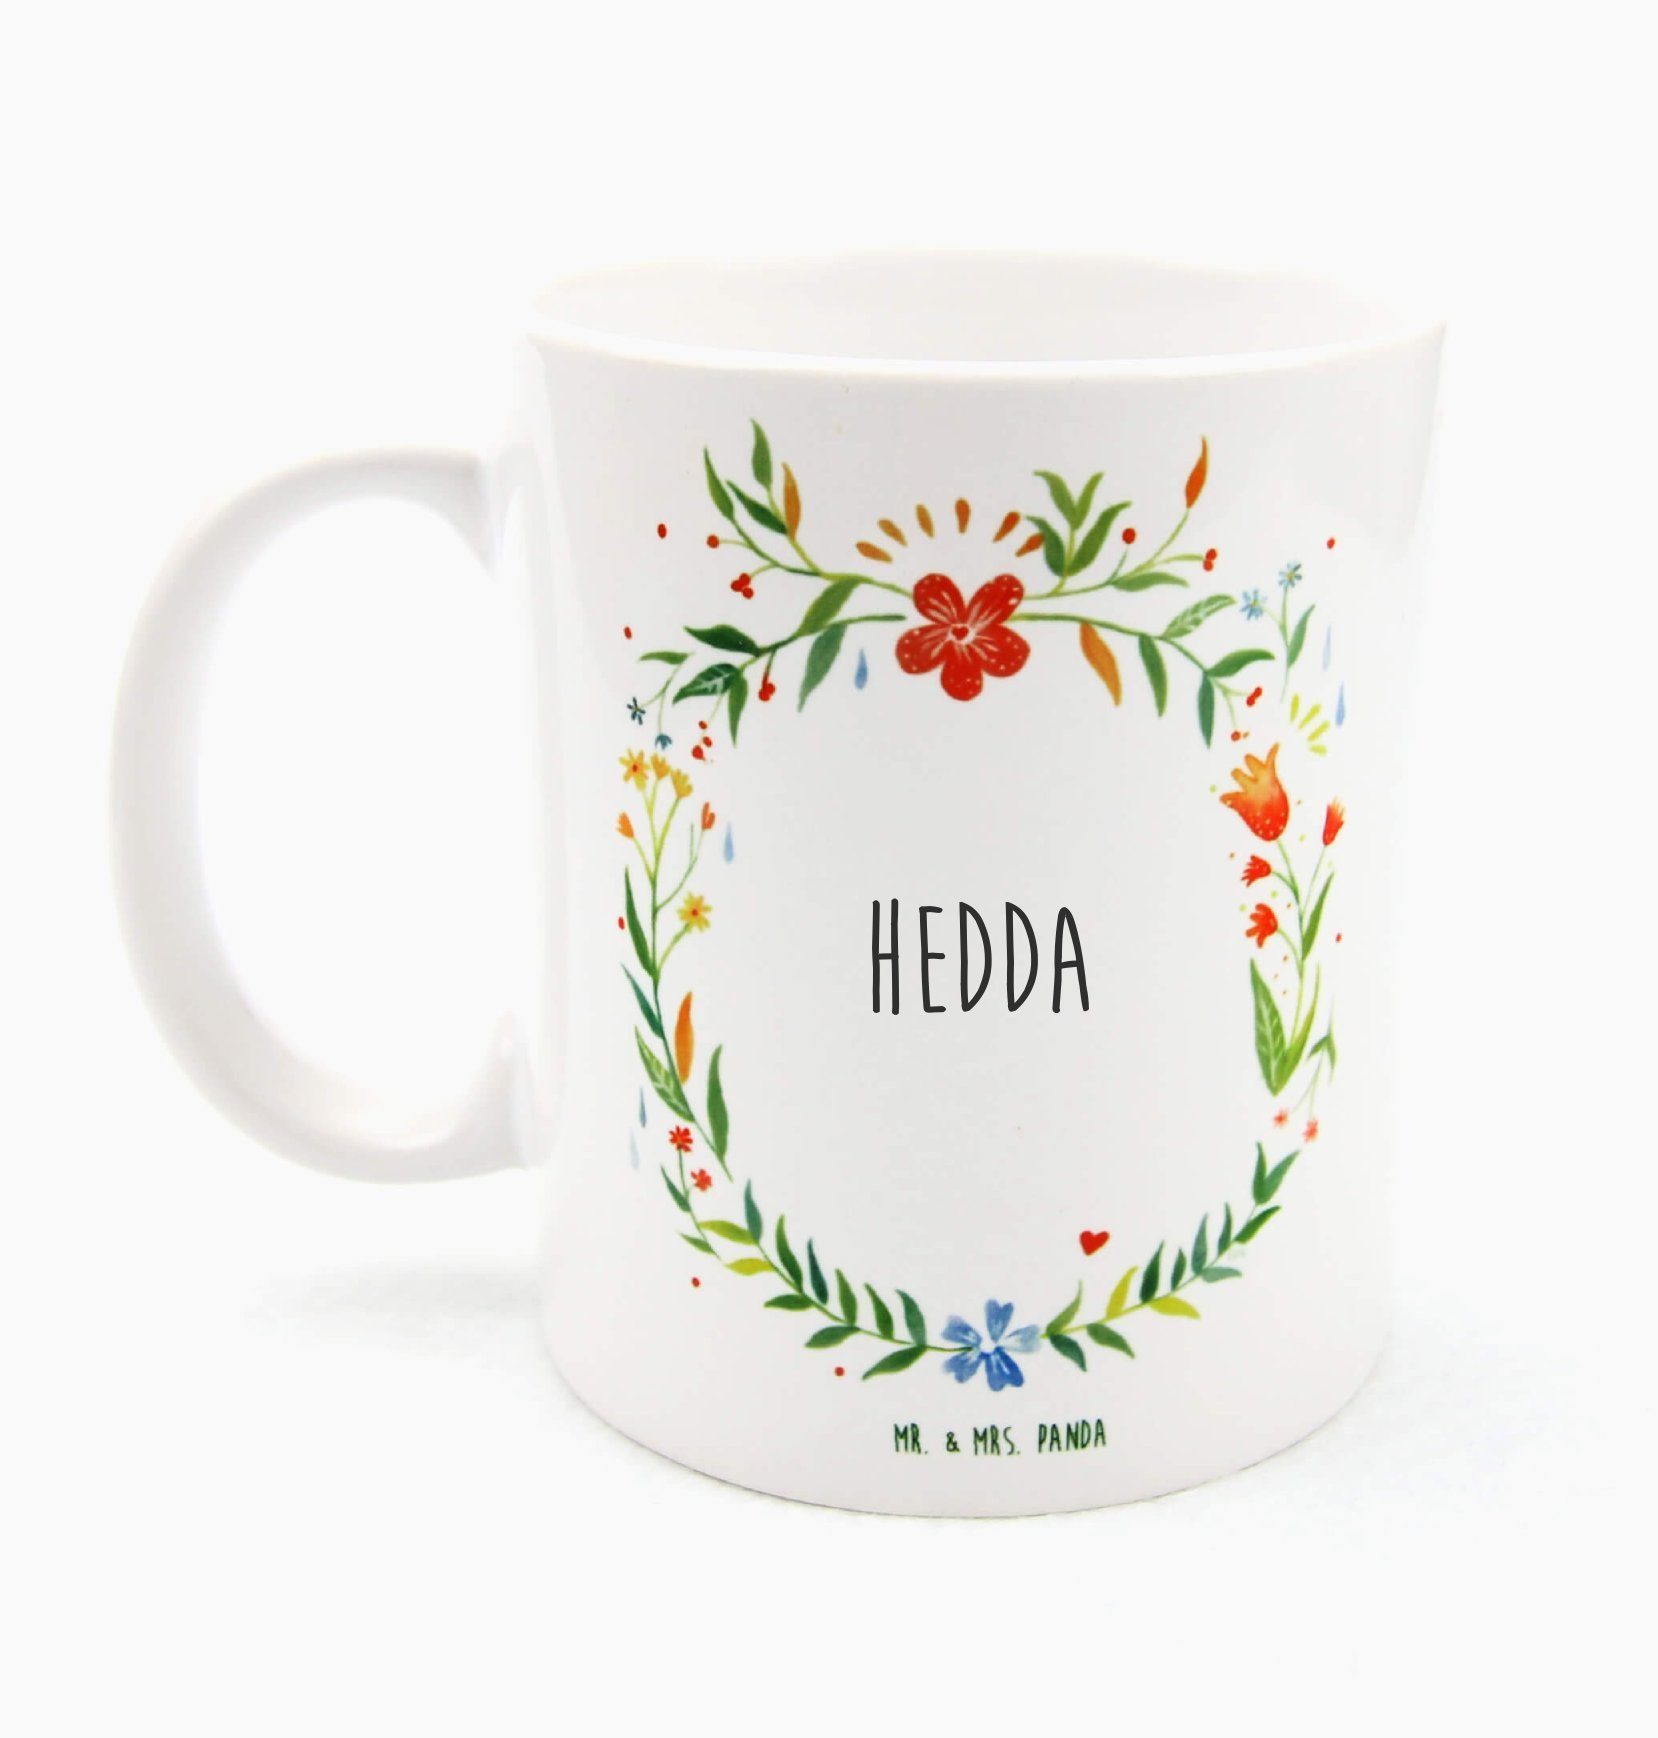 Mr. & Mrs. Panda Tasse Hedda - Geschenk, Tasse Motive, Kaffeetasse, Teebecher, Kaffeebecher, Keramik